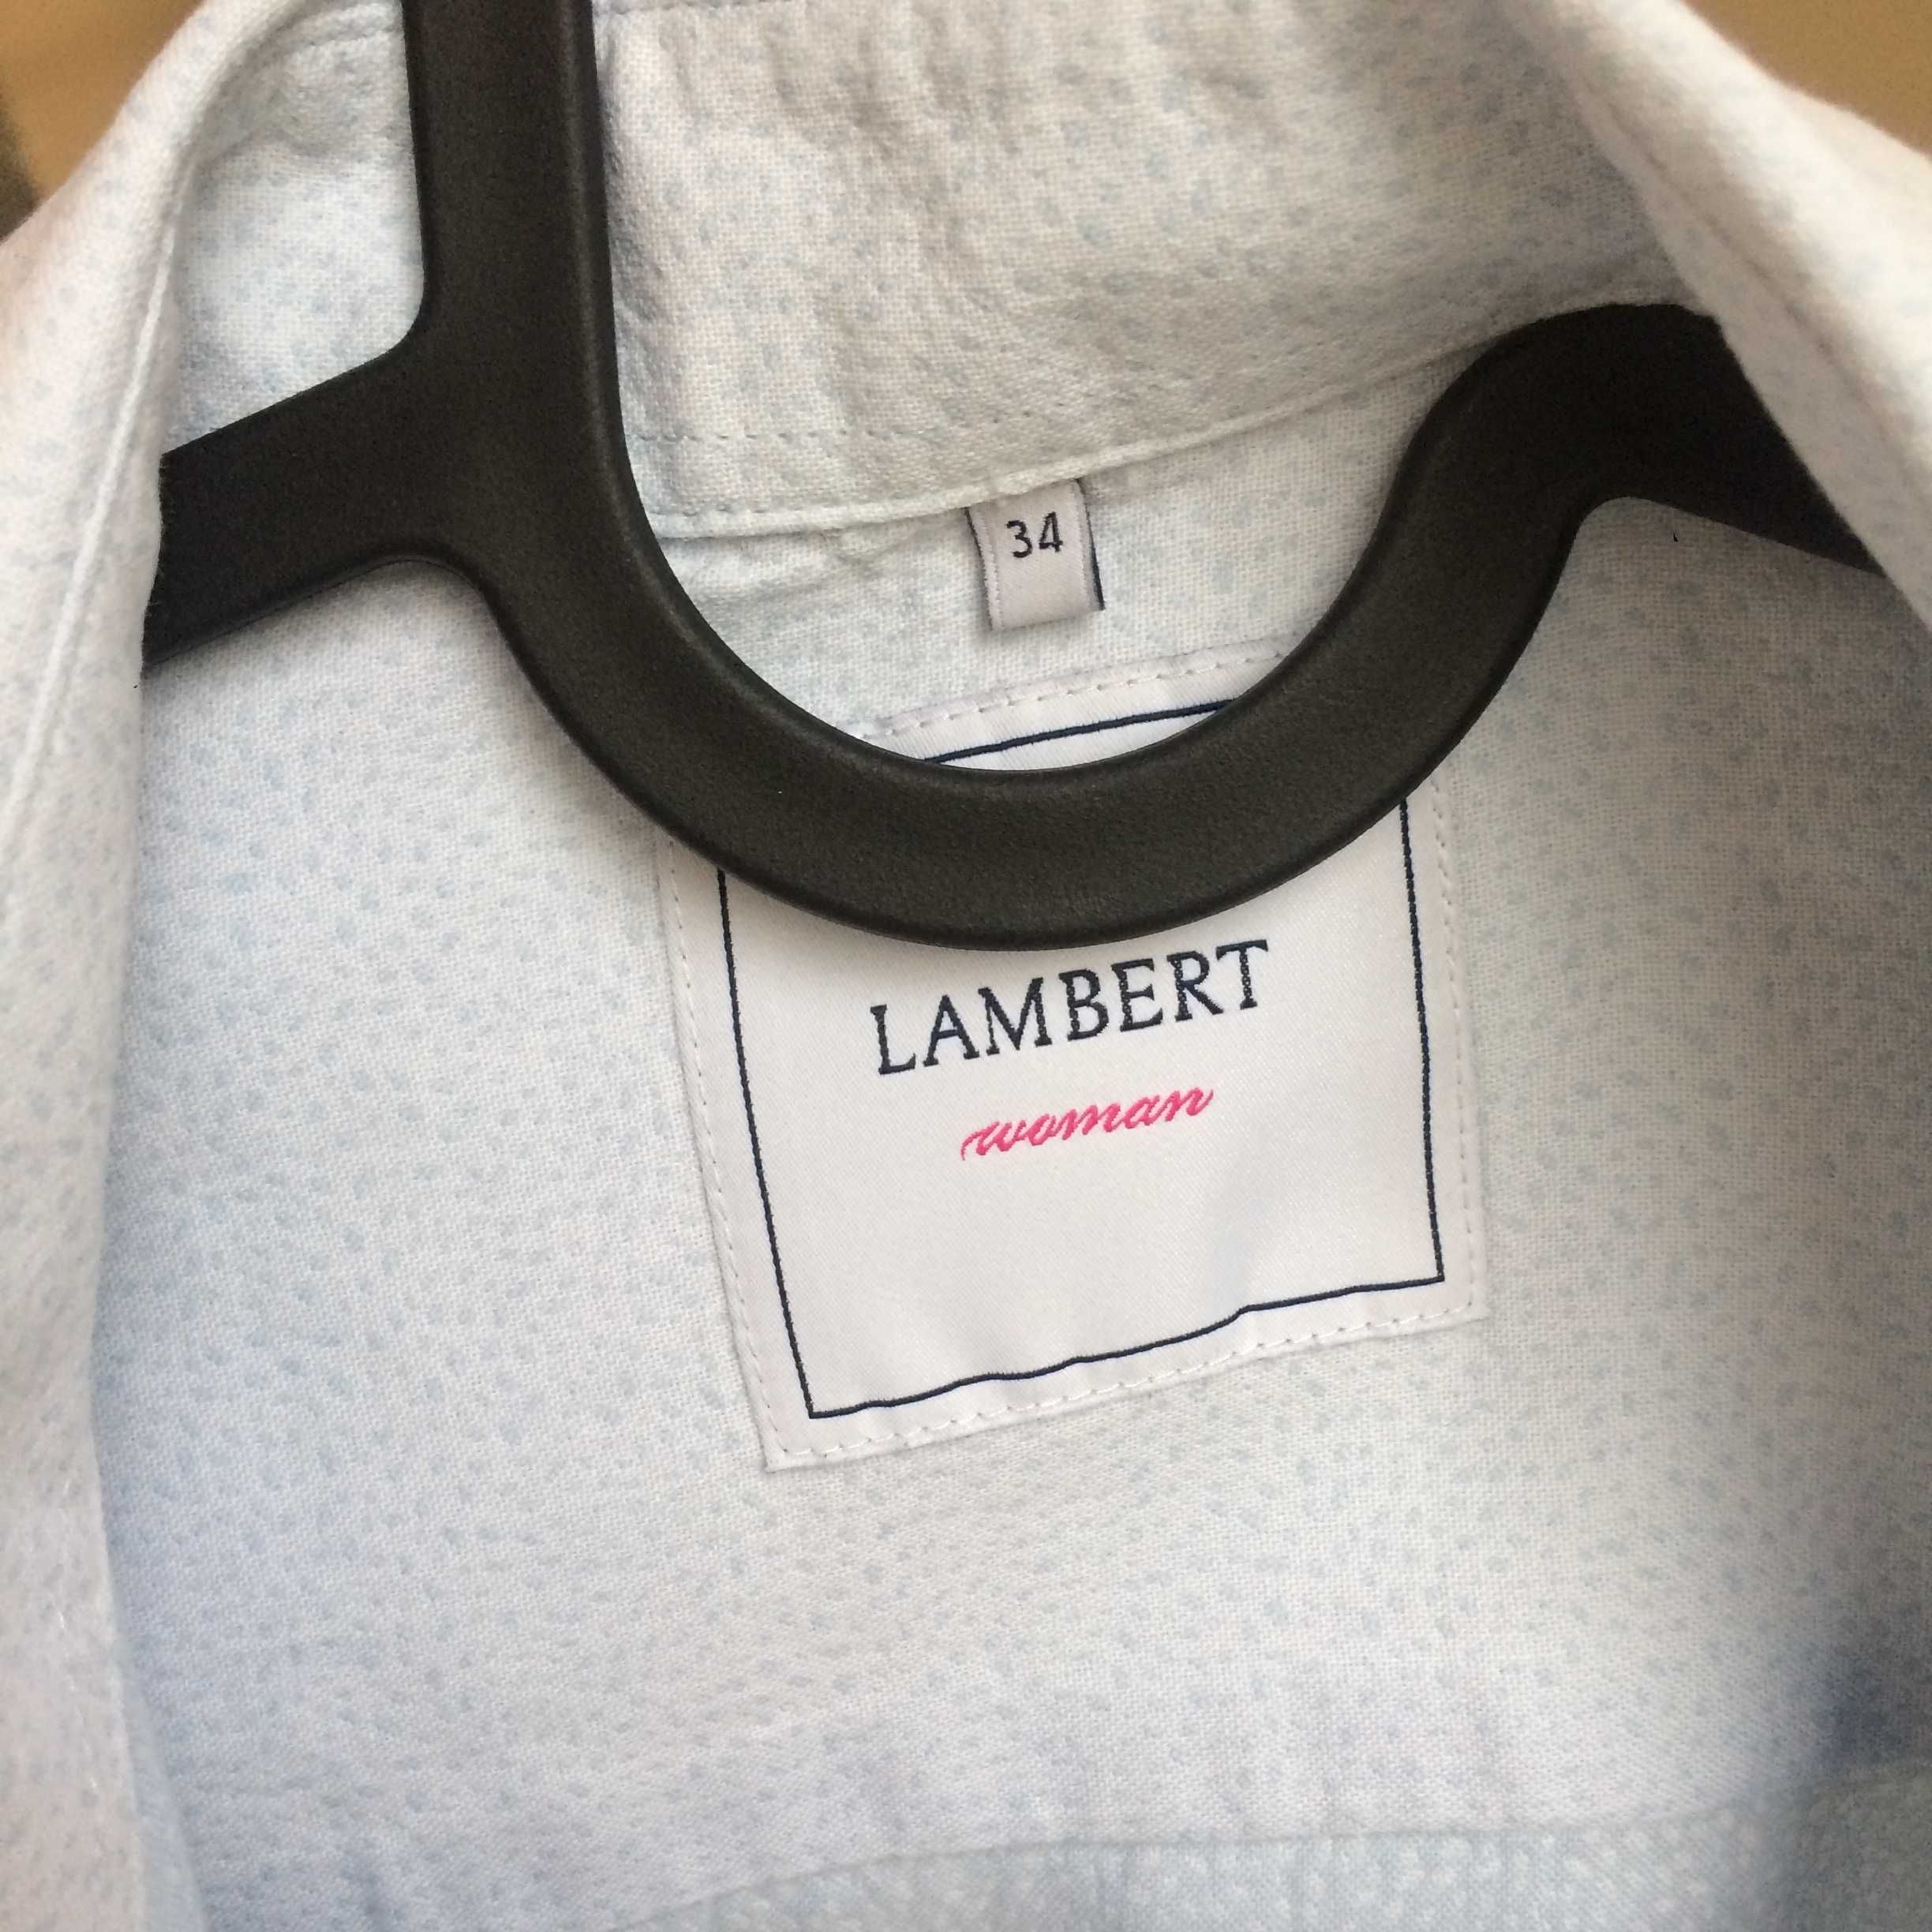 Wólczanka, rozm 34, kolekcja Lambert woman, koszula damska ze wstążką